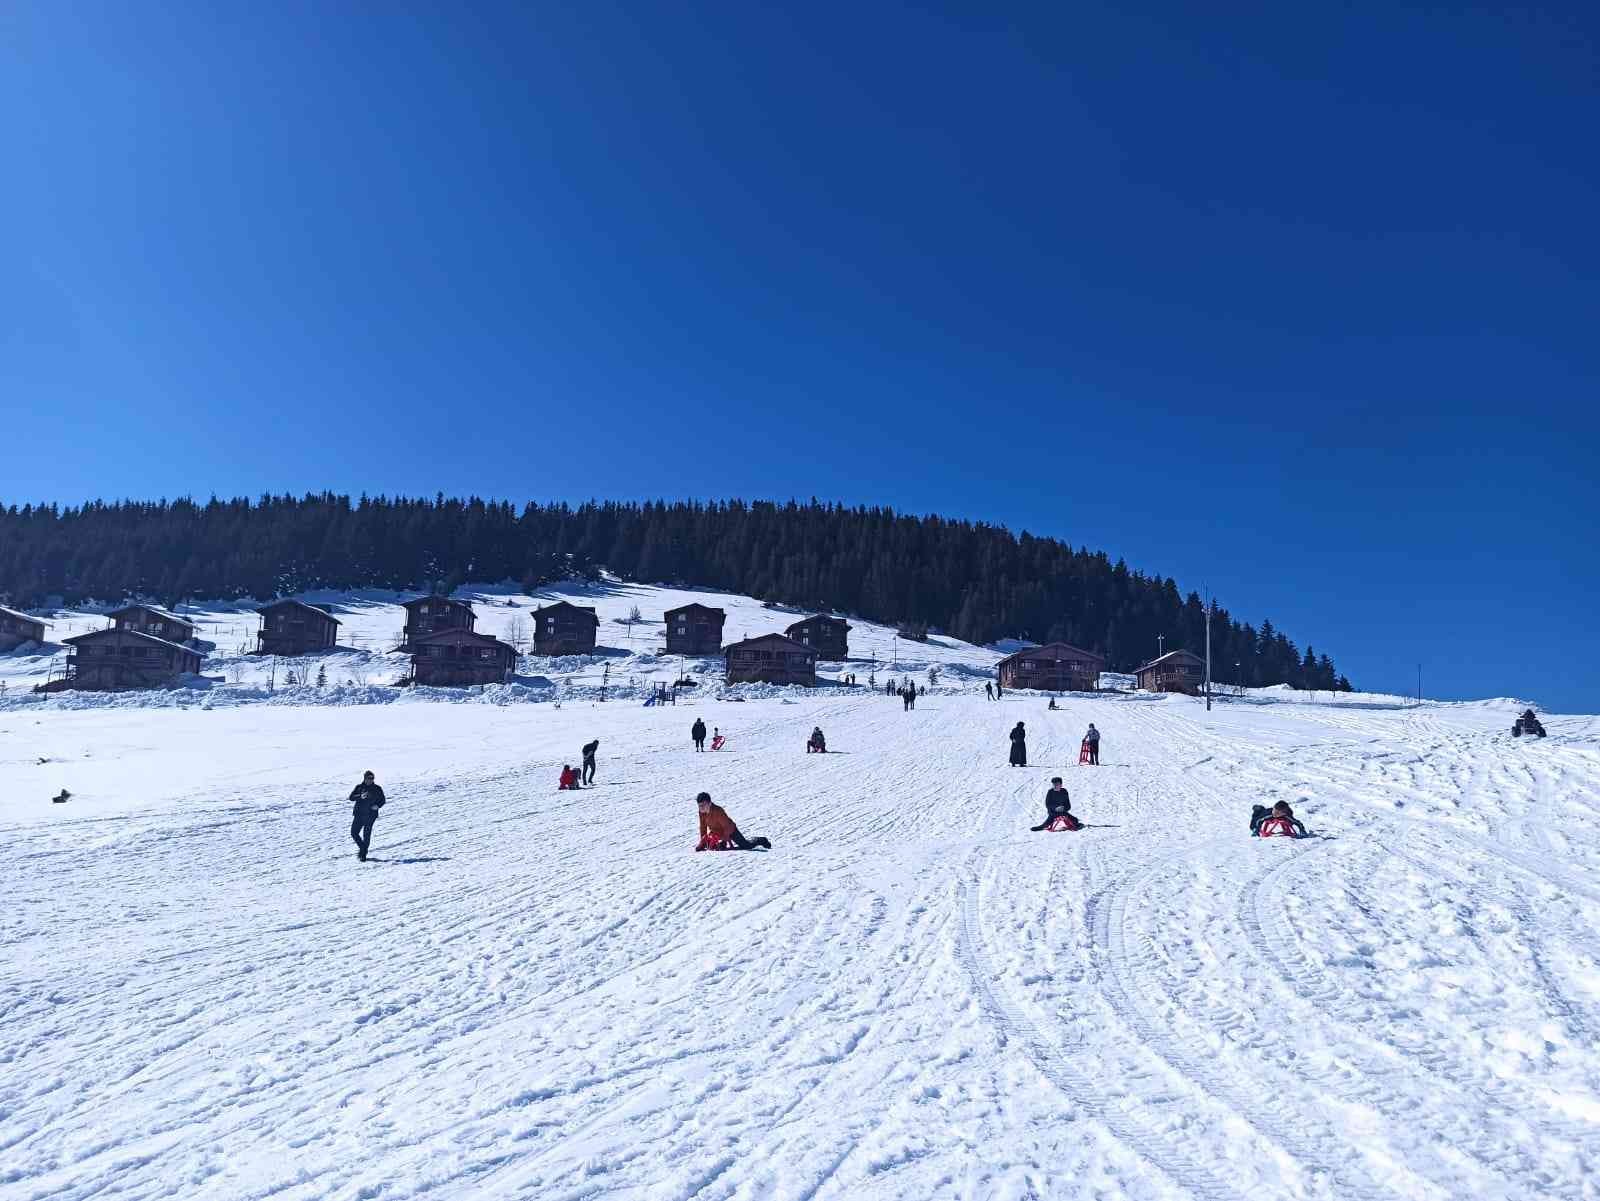 Giresun’da kış turizmine gösterilen ilgi artıyor #giresun